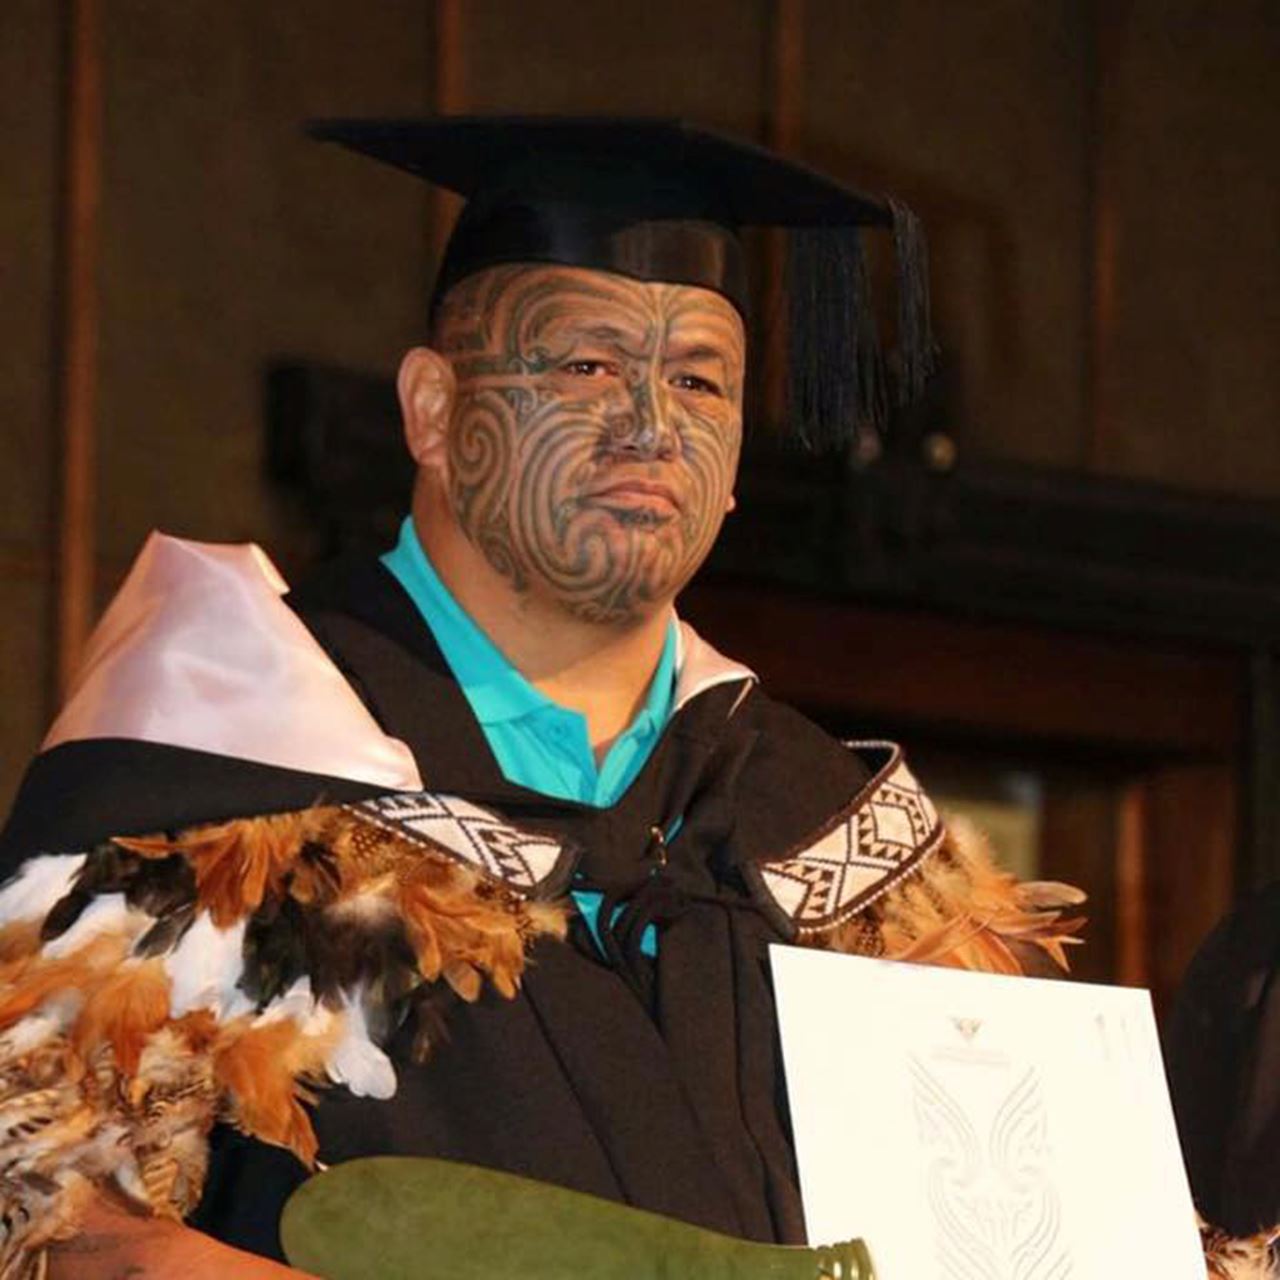 Fabian Mika, Master of Māori Studies graduate